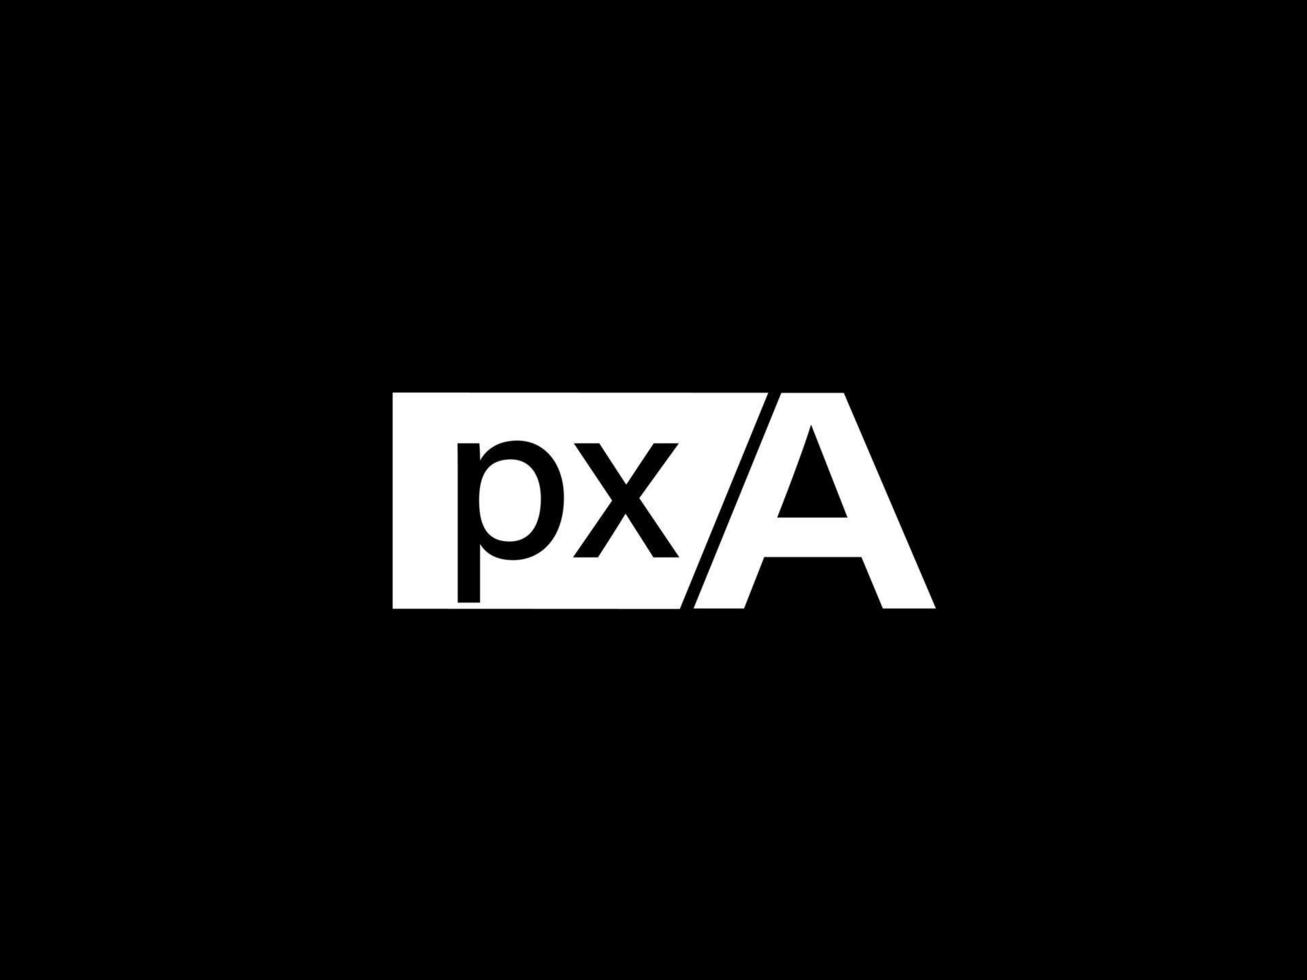 pxa logotyp och grafik design vektor konst, ikoner isolerat på svart bakgrund